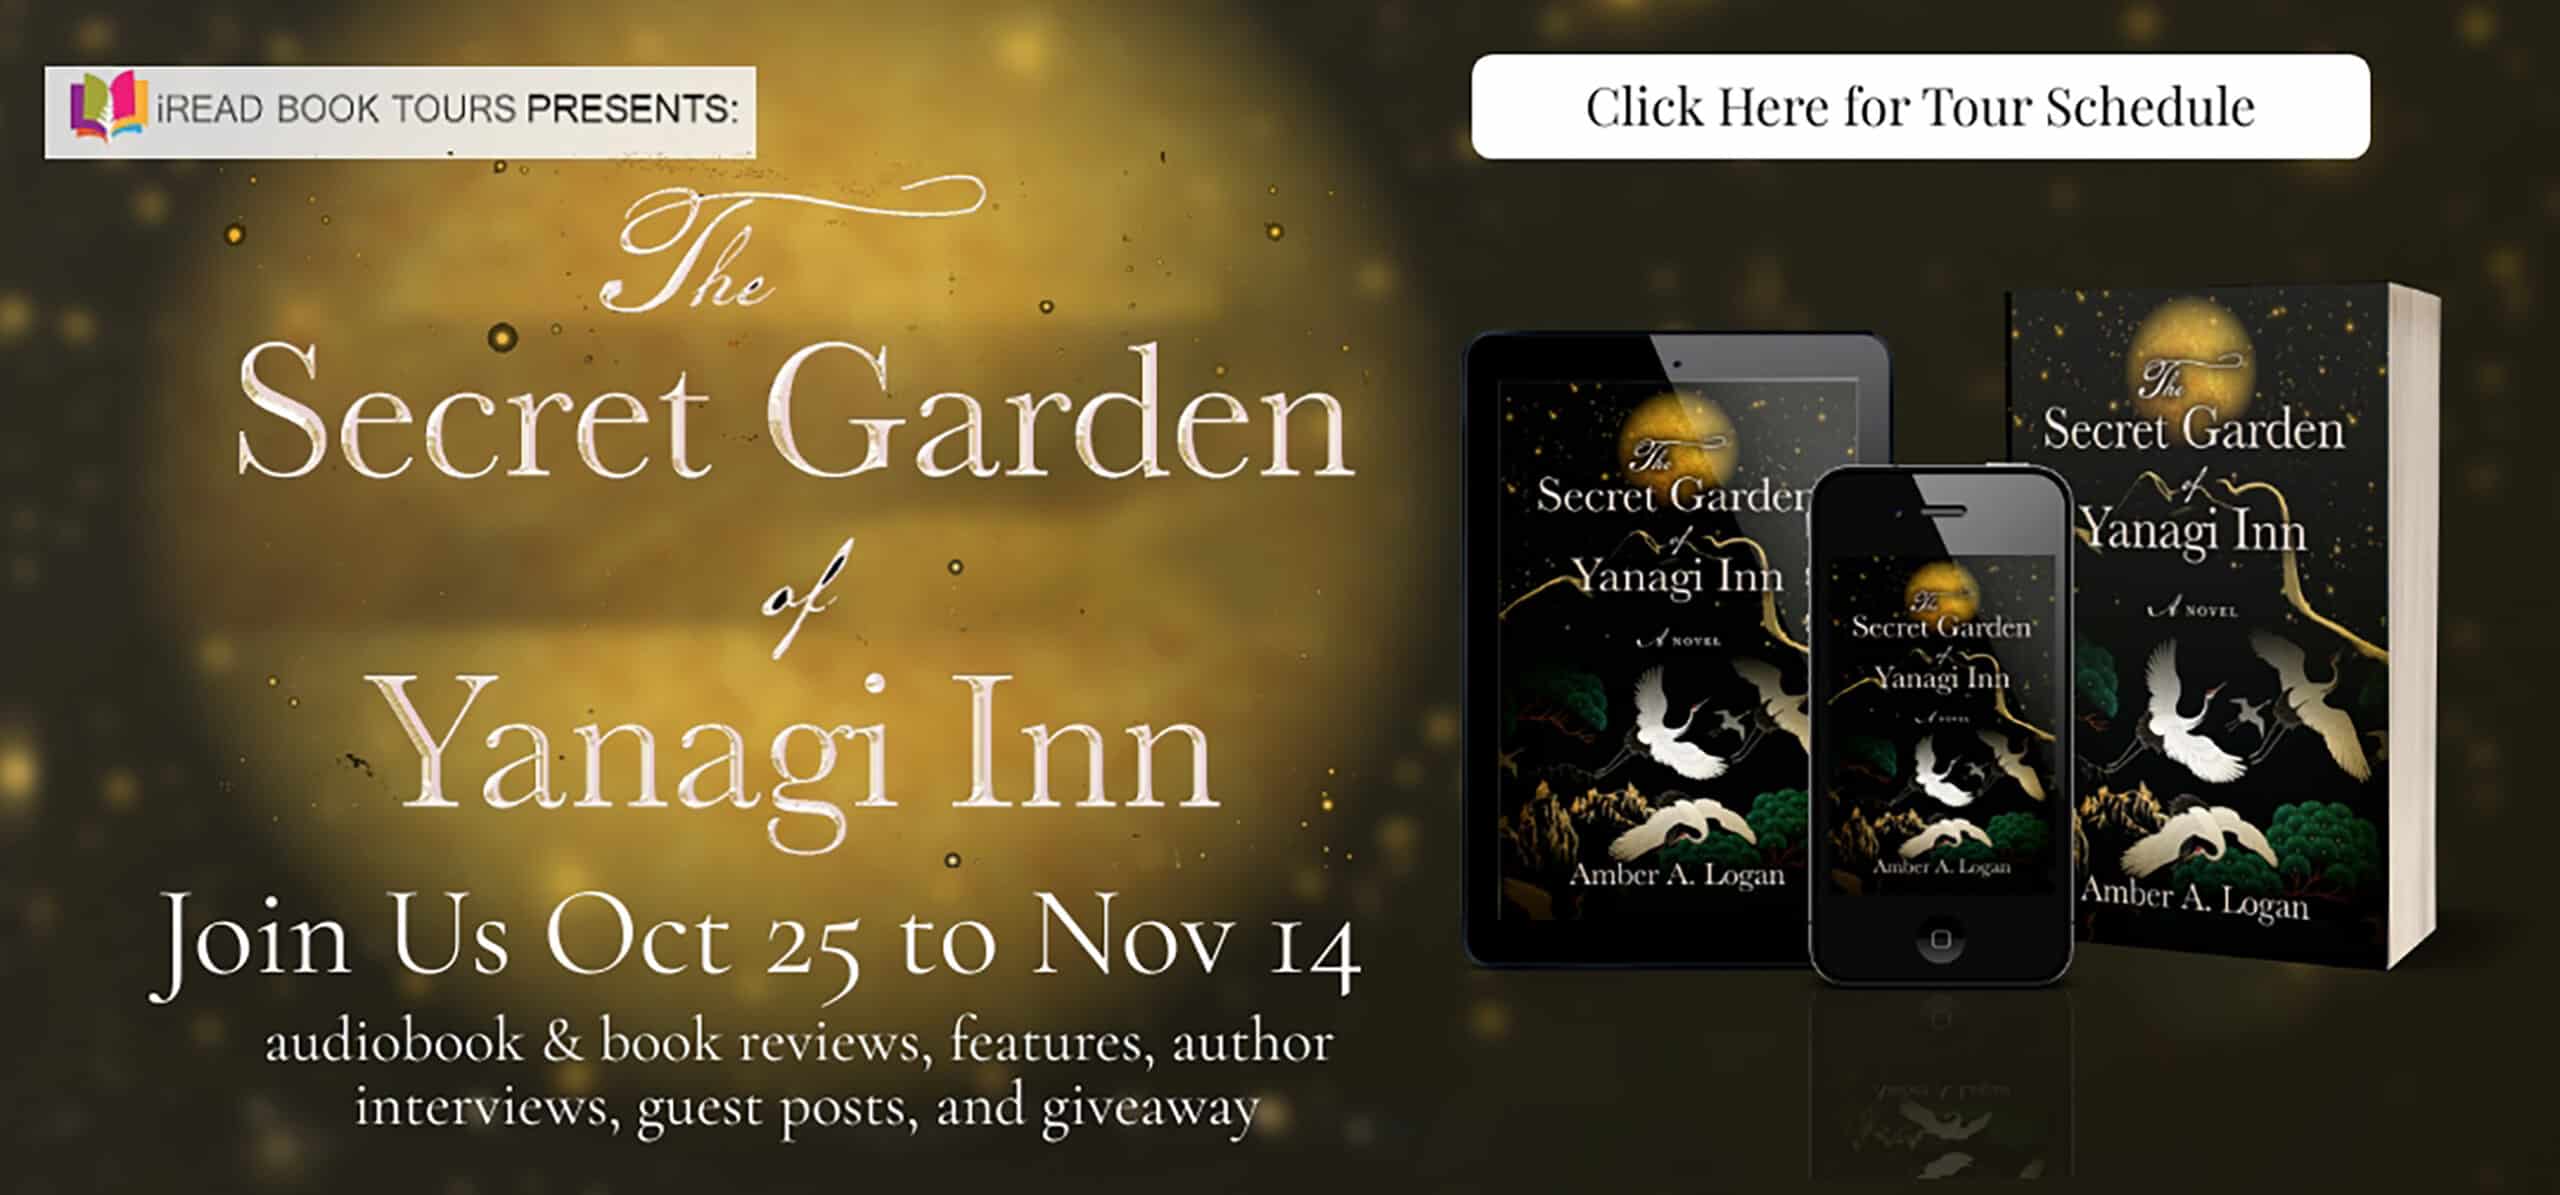 The Secret Garden of Yanagi Inn by Amber A. Logan | Spotlight ~ Giveaway (2 Winners)